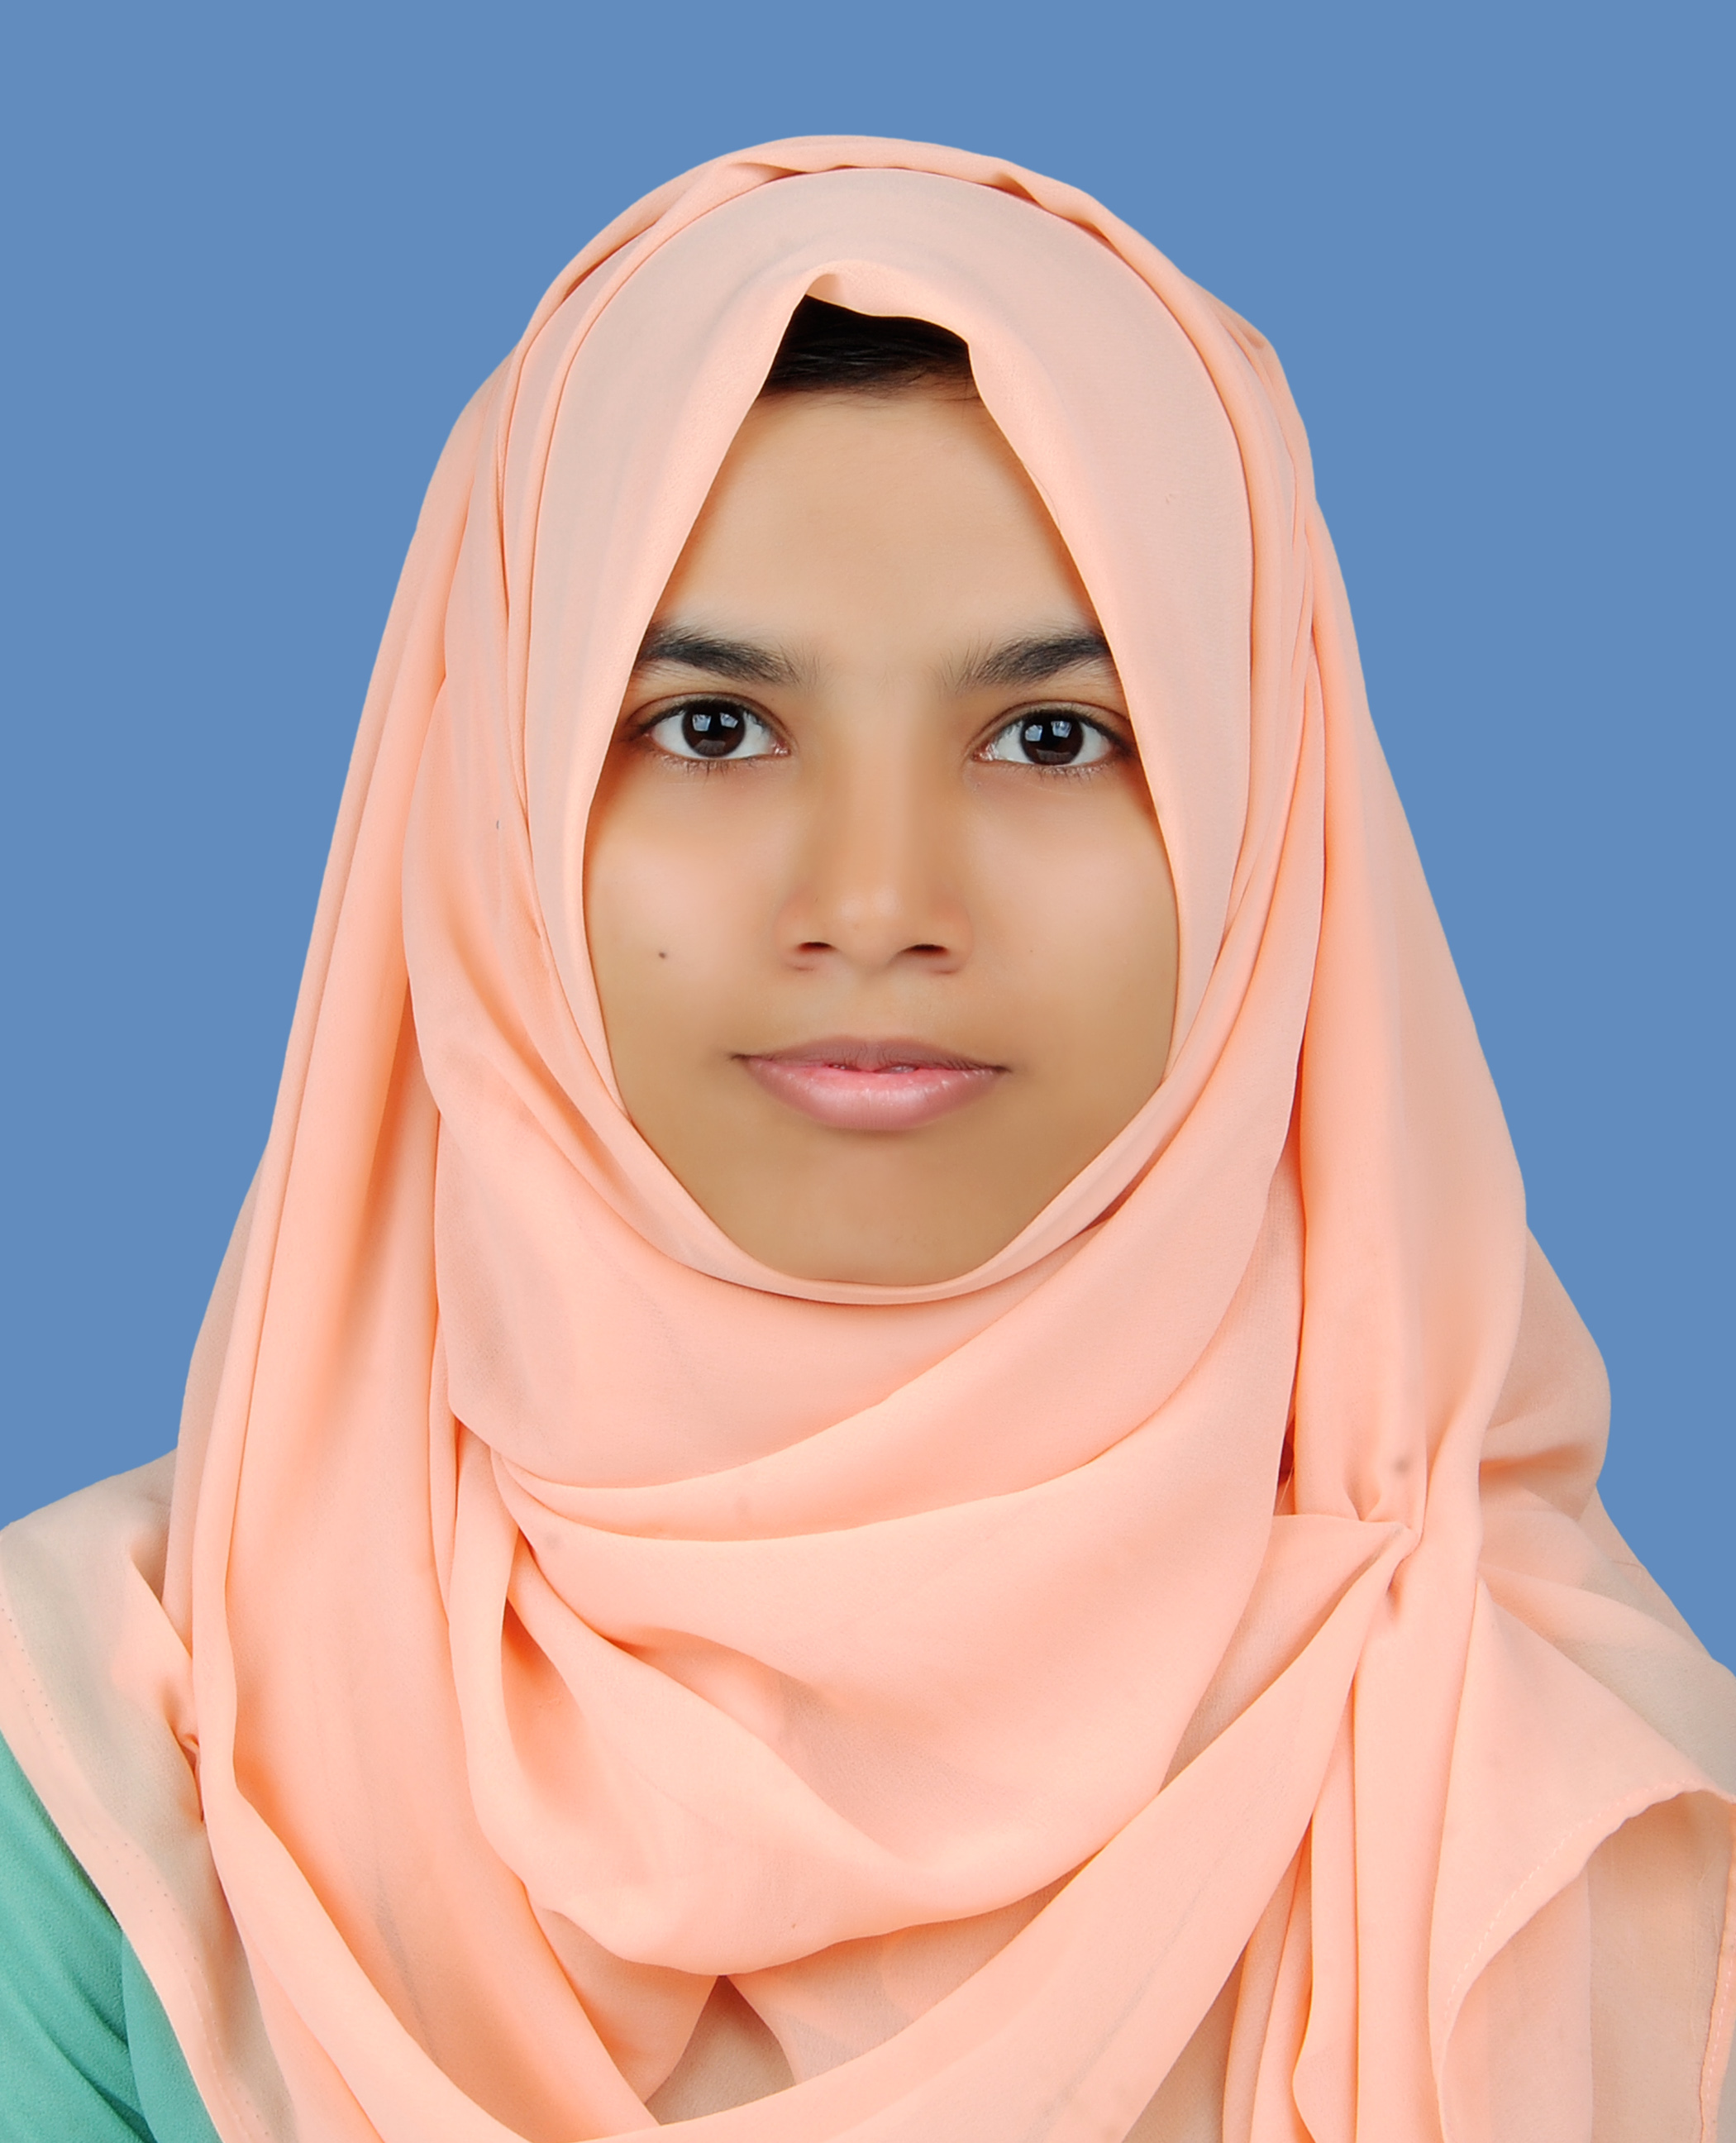 Ms. Afrin Faizal